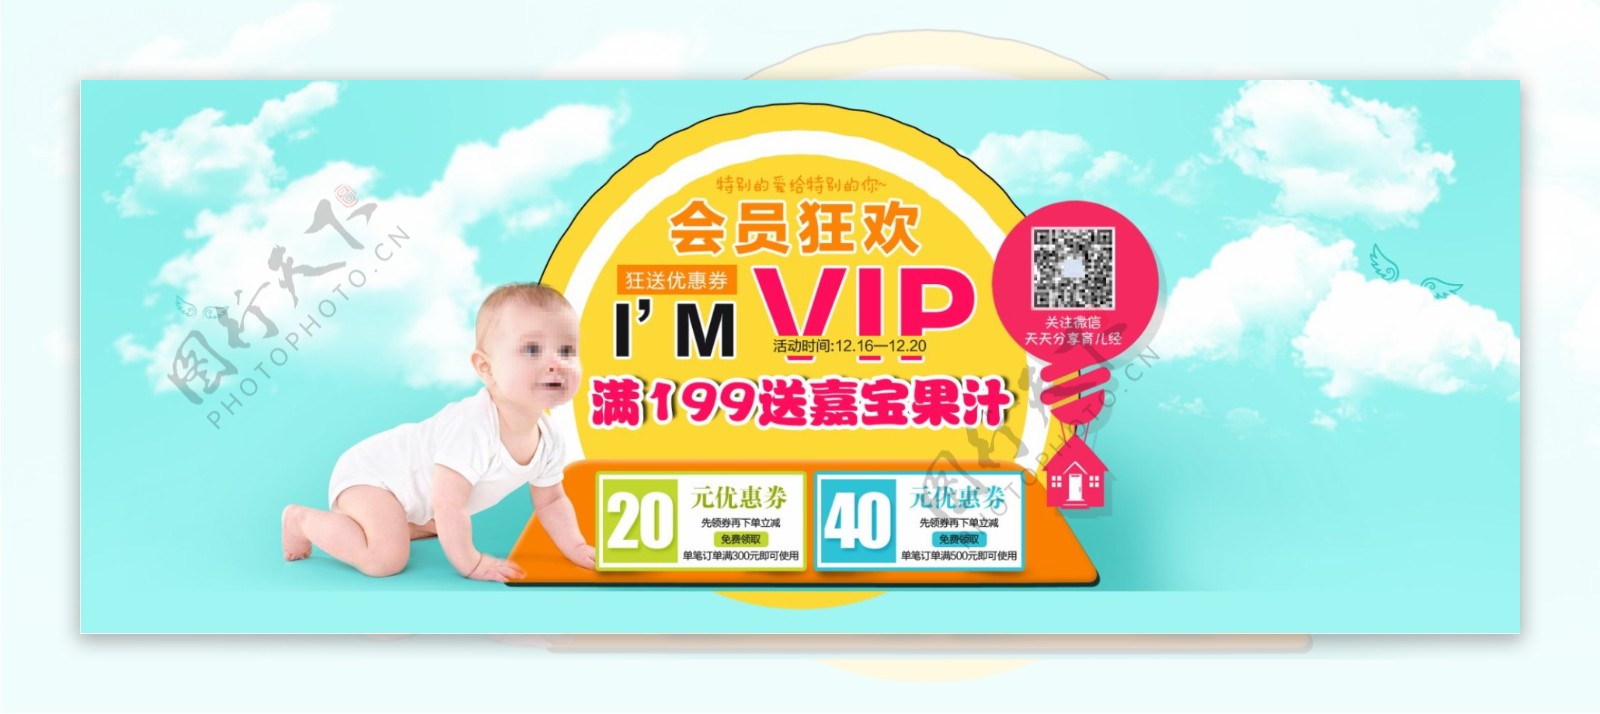 VIP狂欢母婴海报13